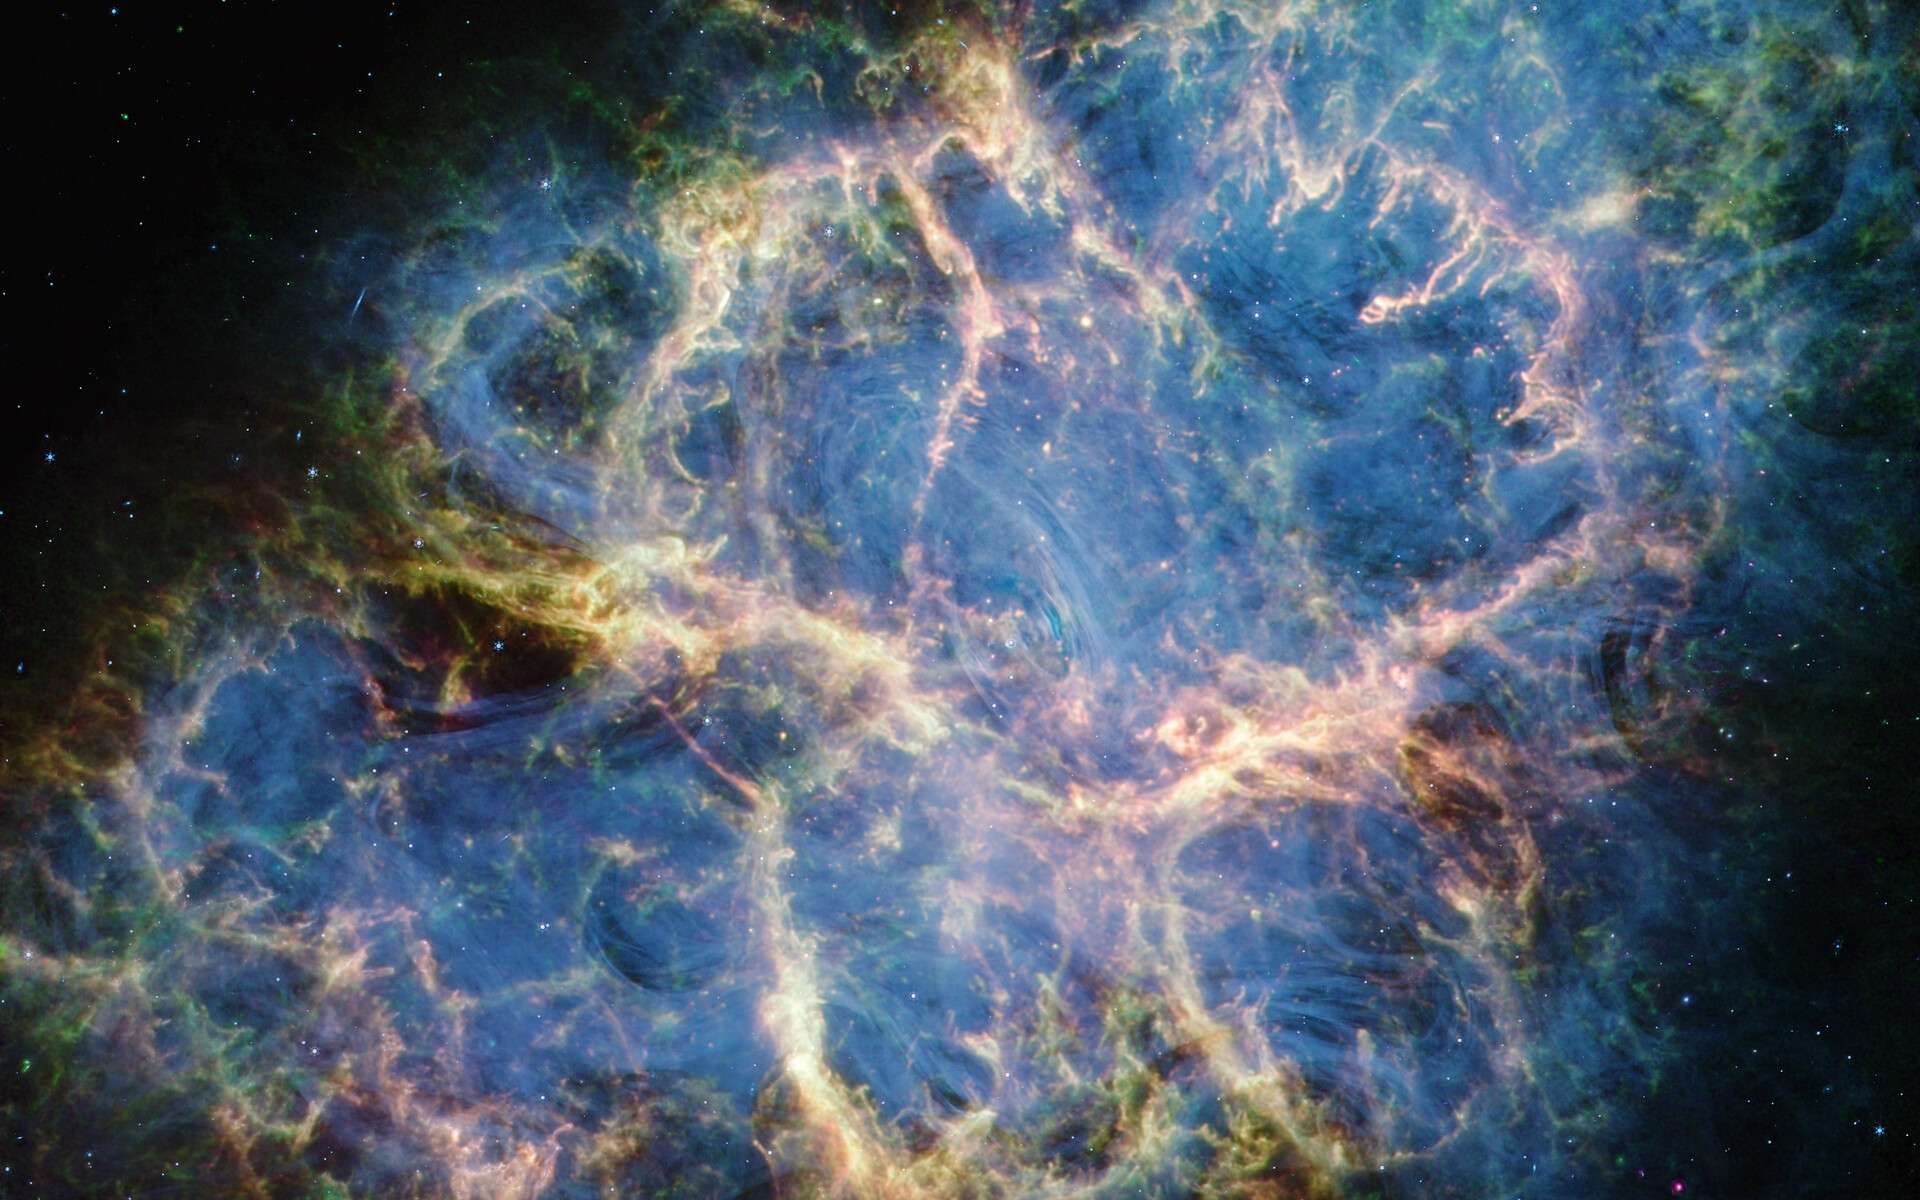 Le télescope James-Webb sonde les secrets de cette étoile mythique qui a explosé il y a 1 000 ans